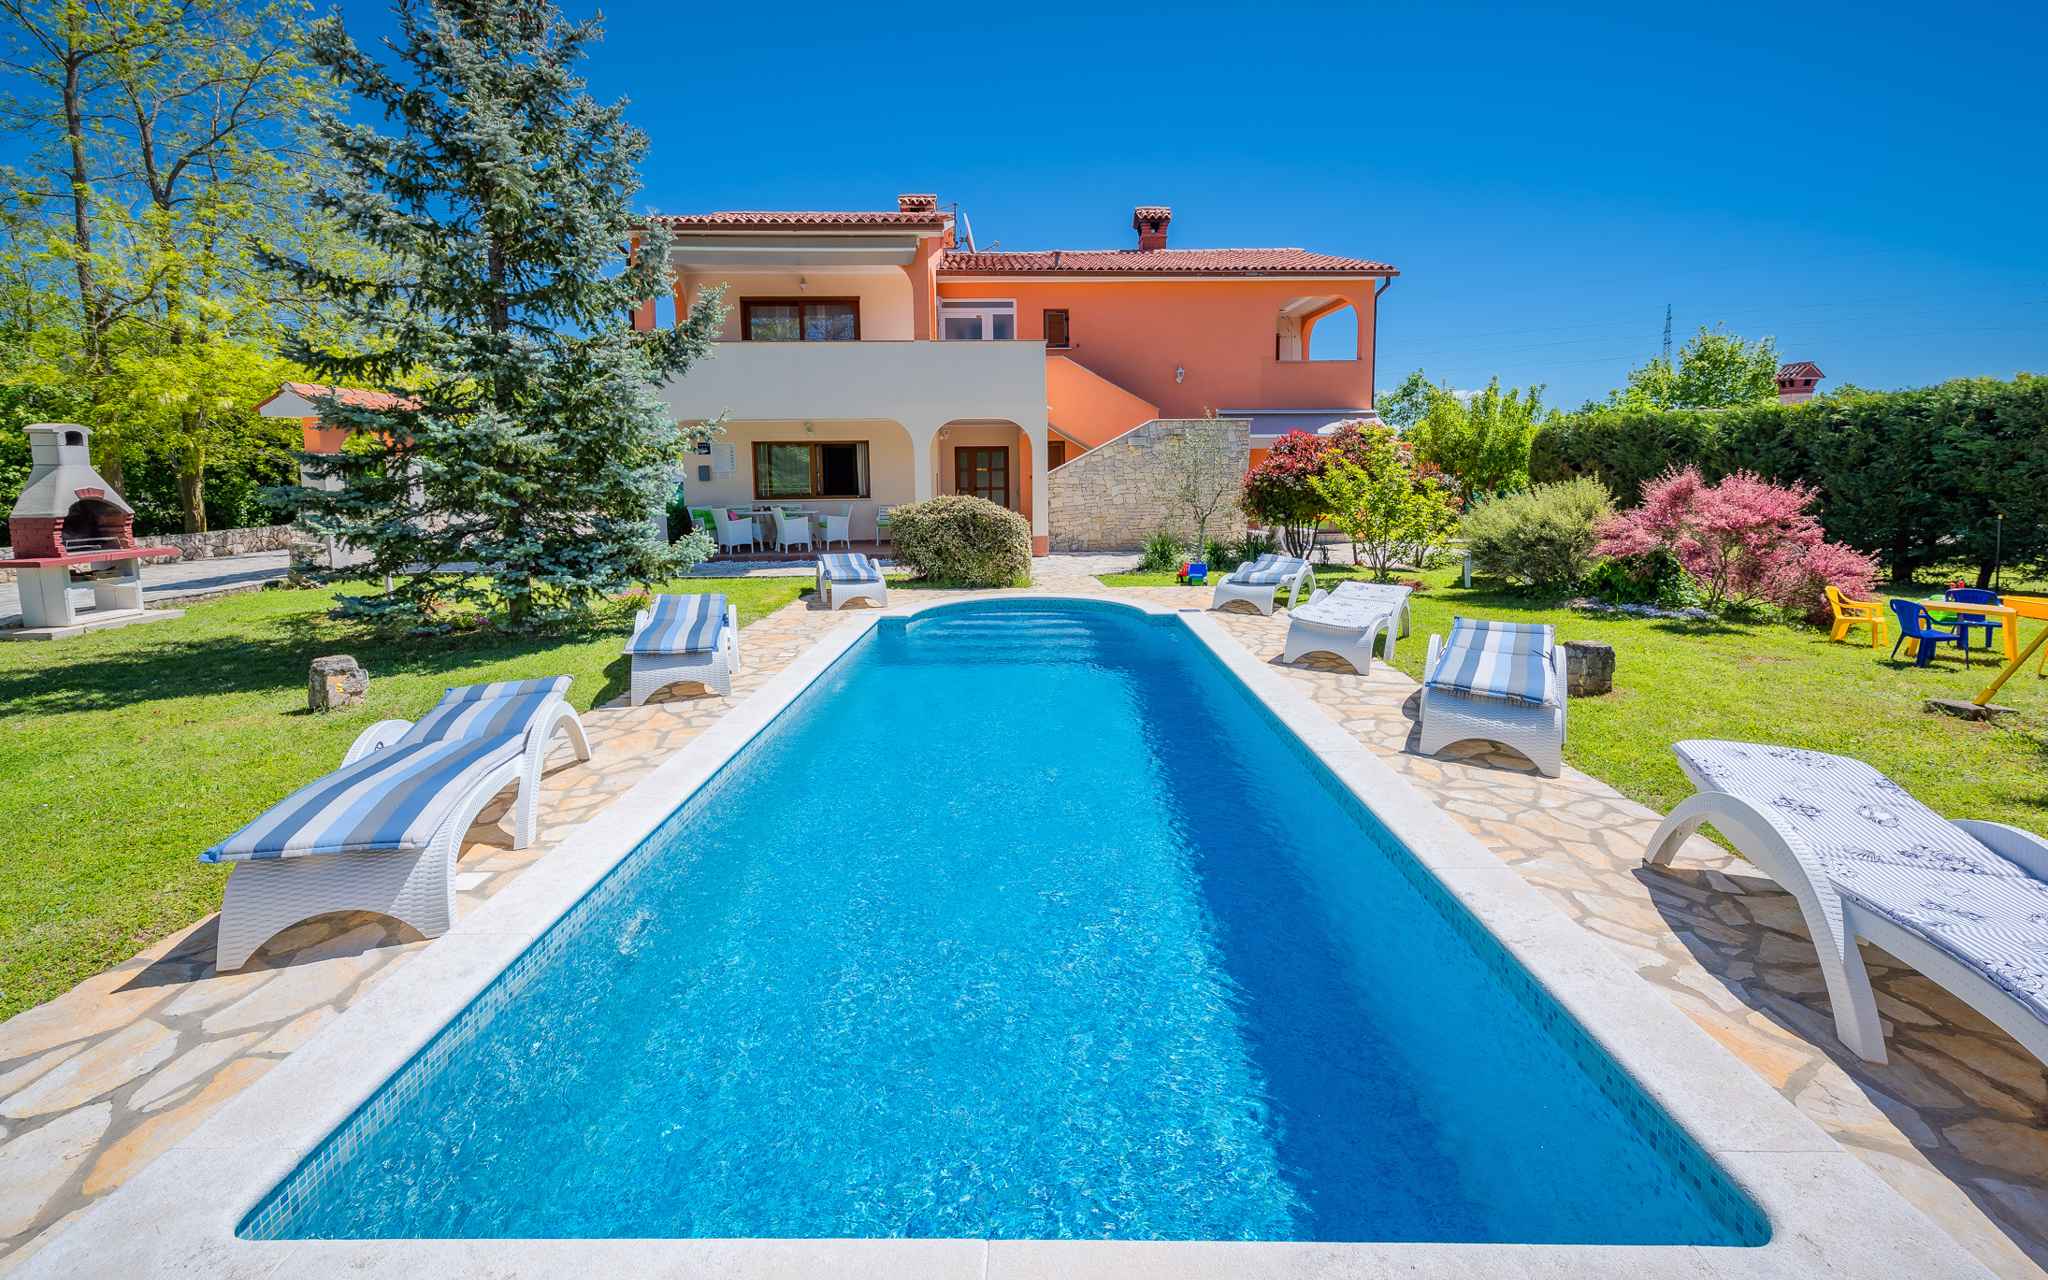 Villa mit Pool und Terrasse Ferienhaus in Istrien